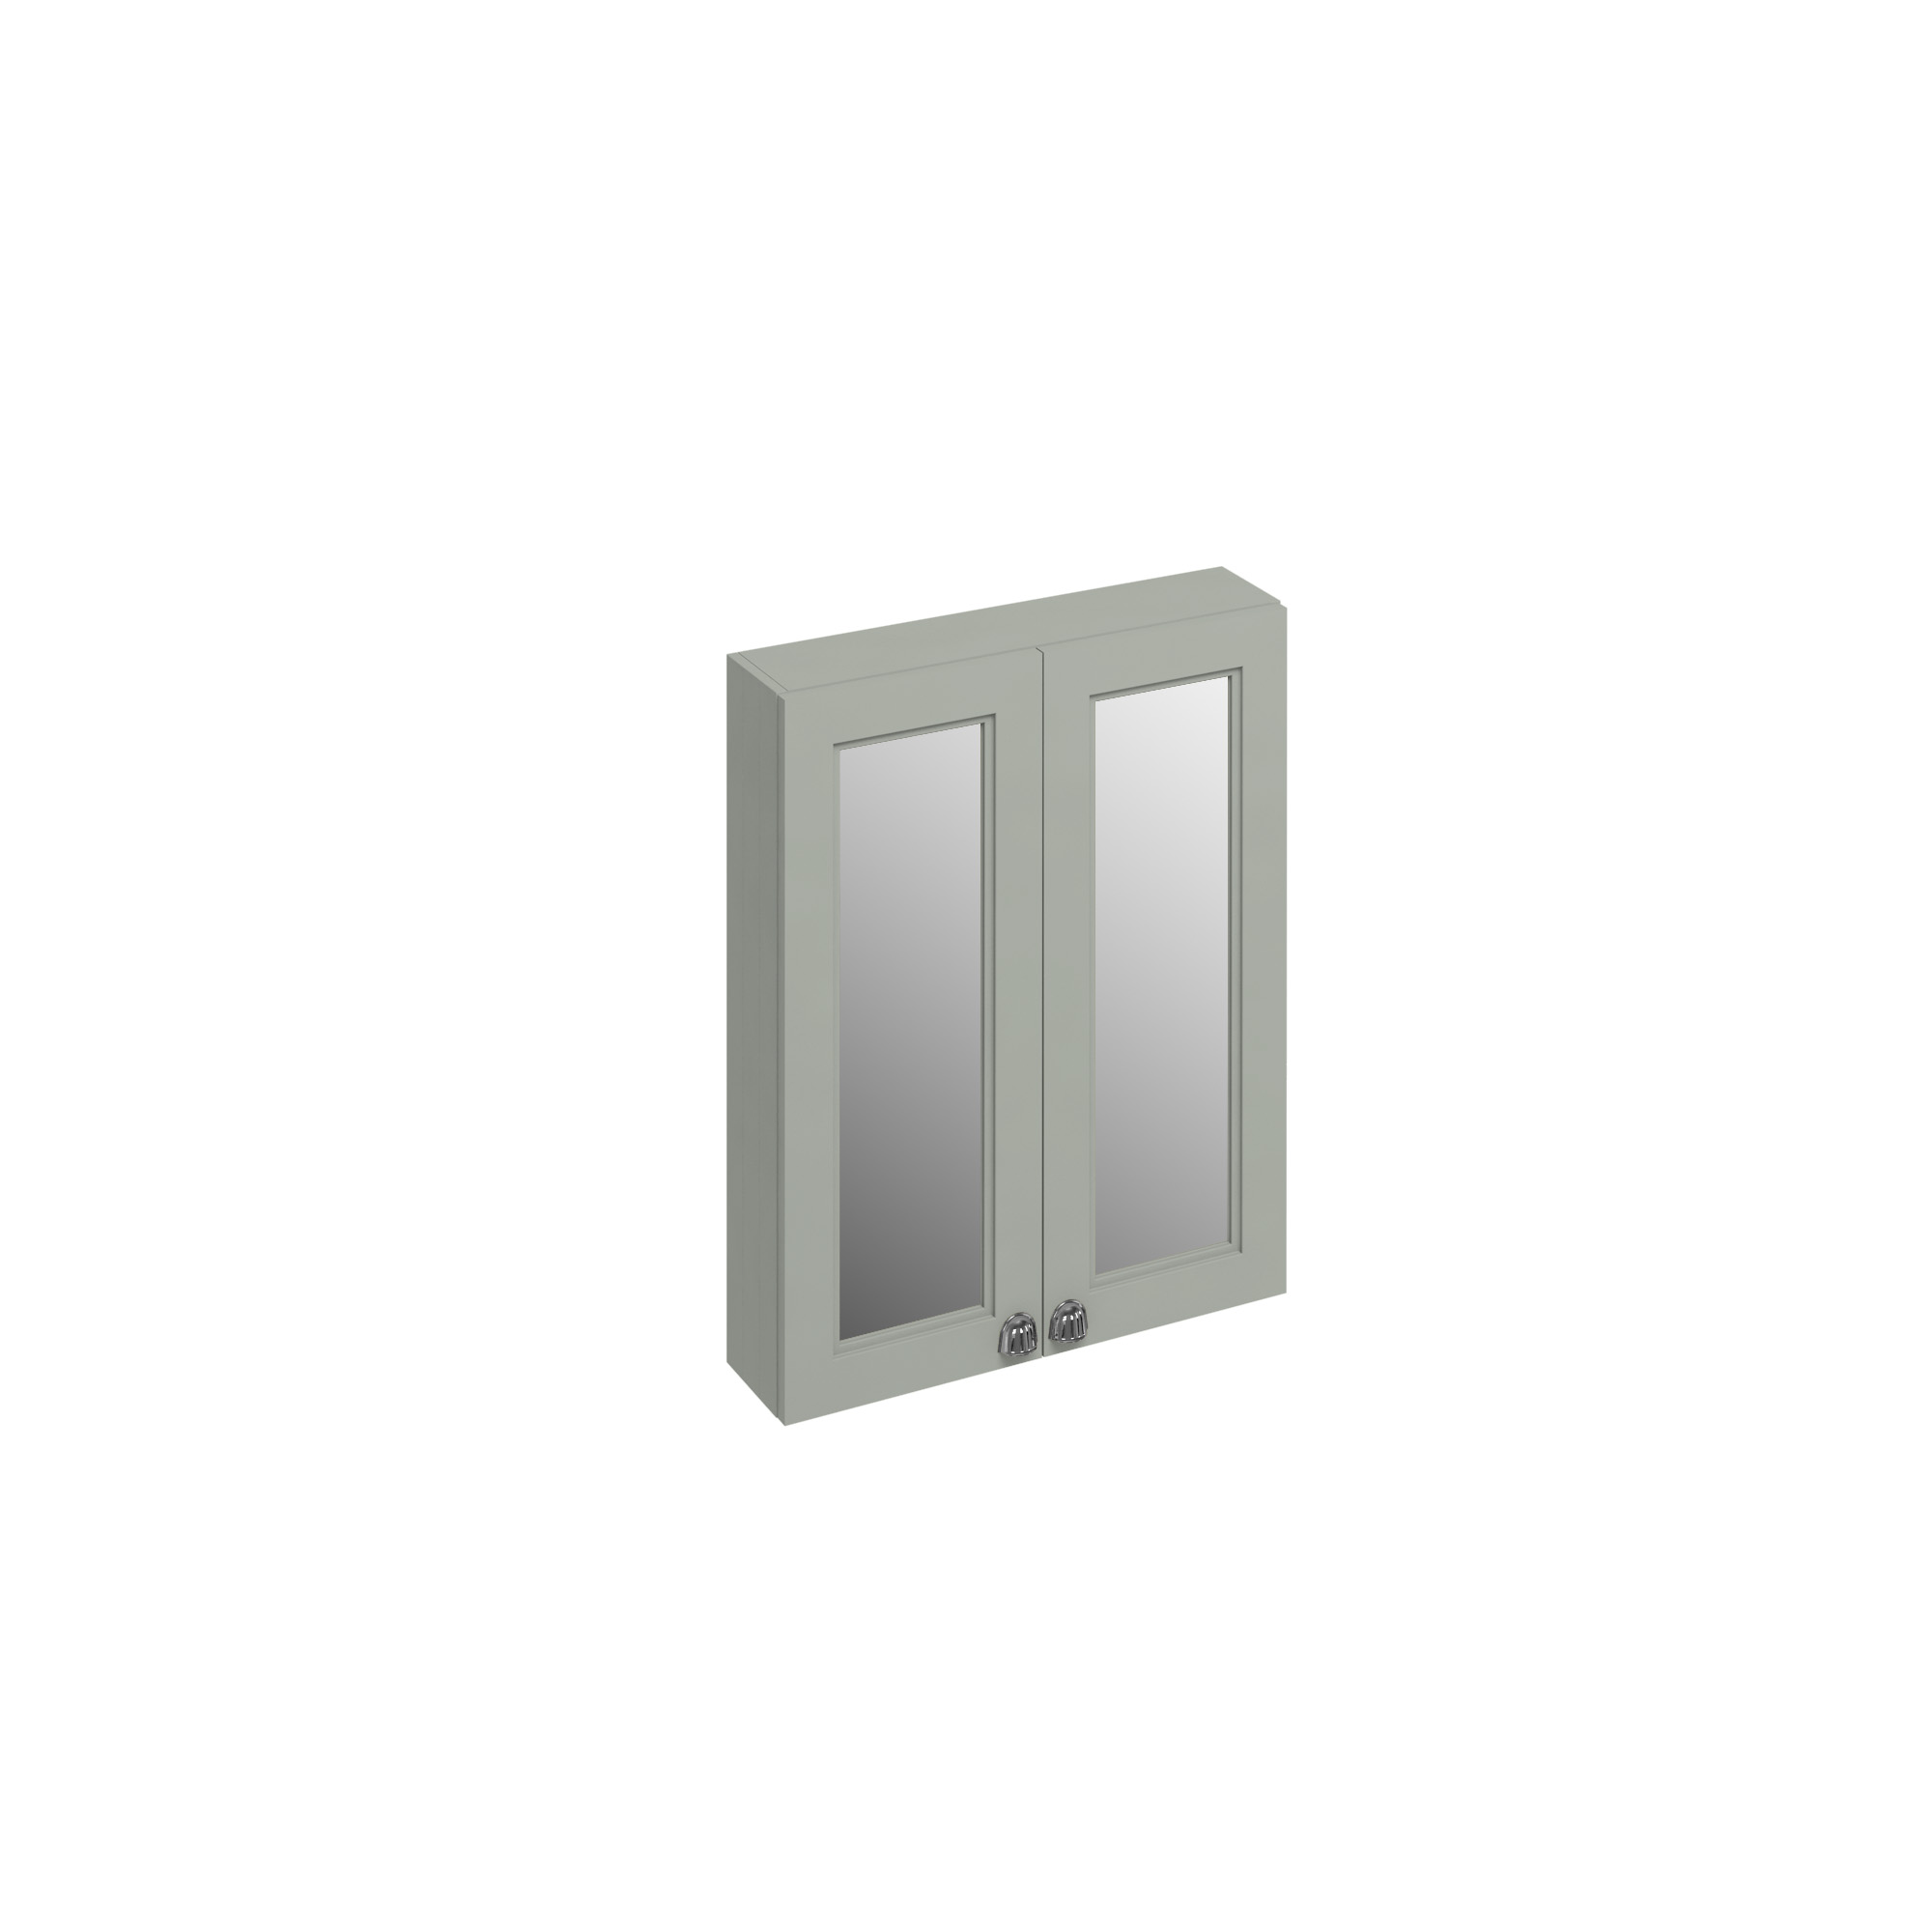 60cm Mirrored double door wall unit